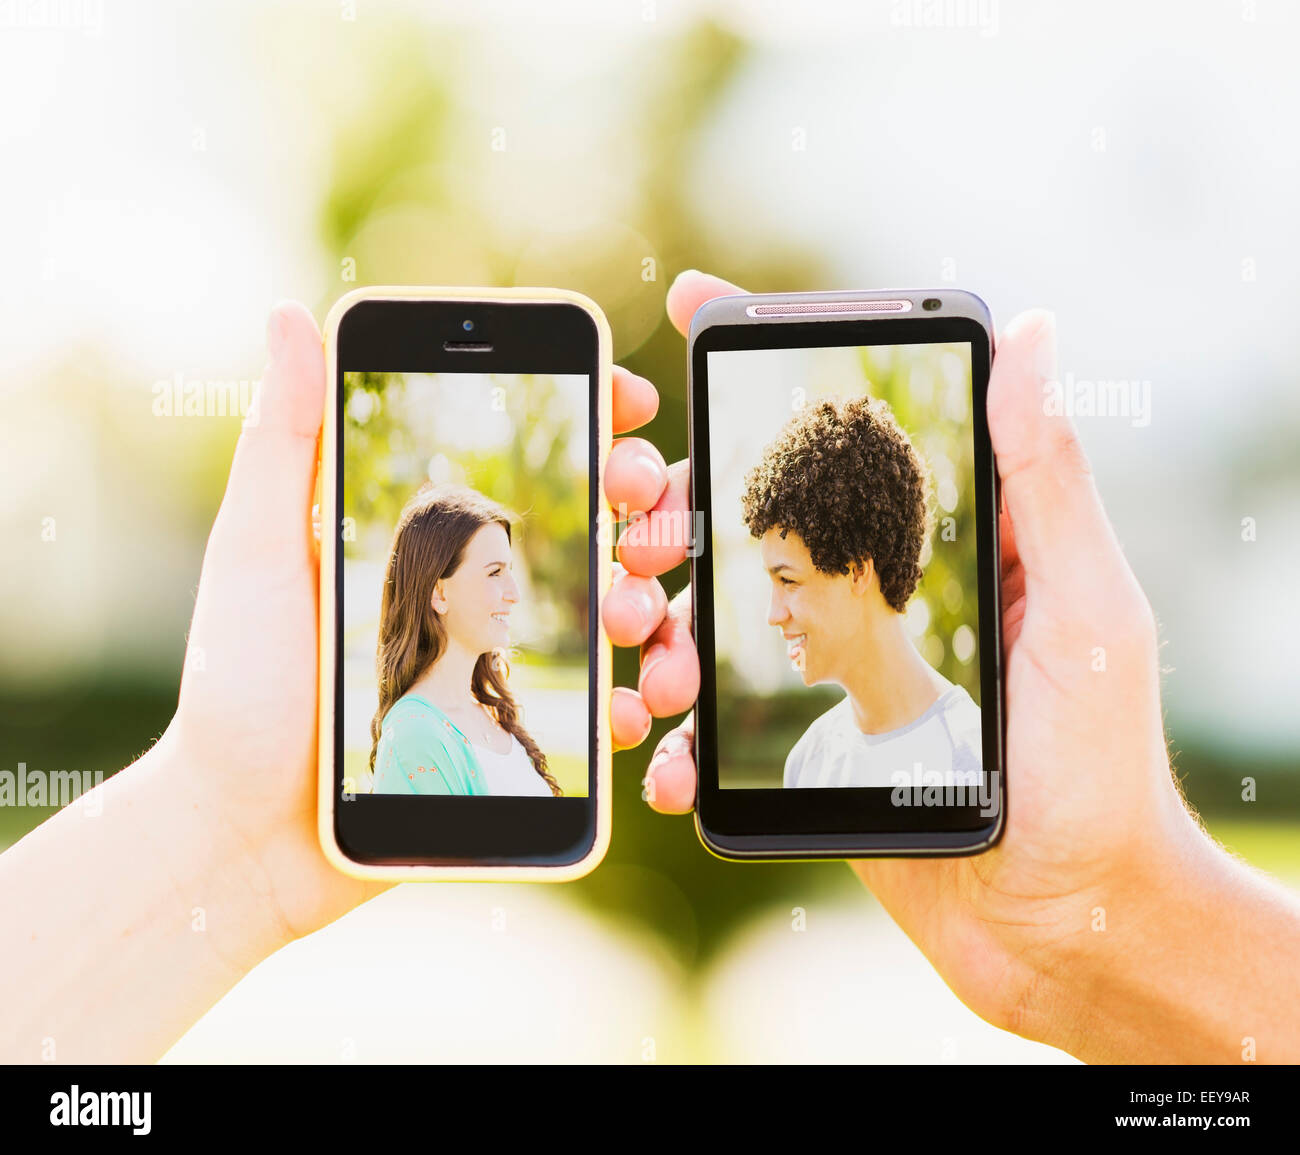 Mann und junges Mädchen (14-15) halten Smartphones mit Fotos von sich selbst Stockfoto